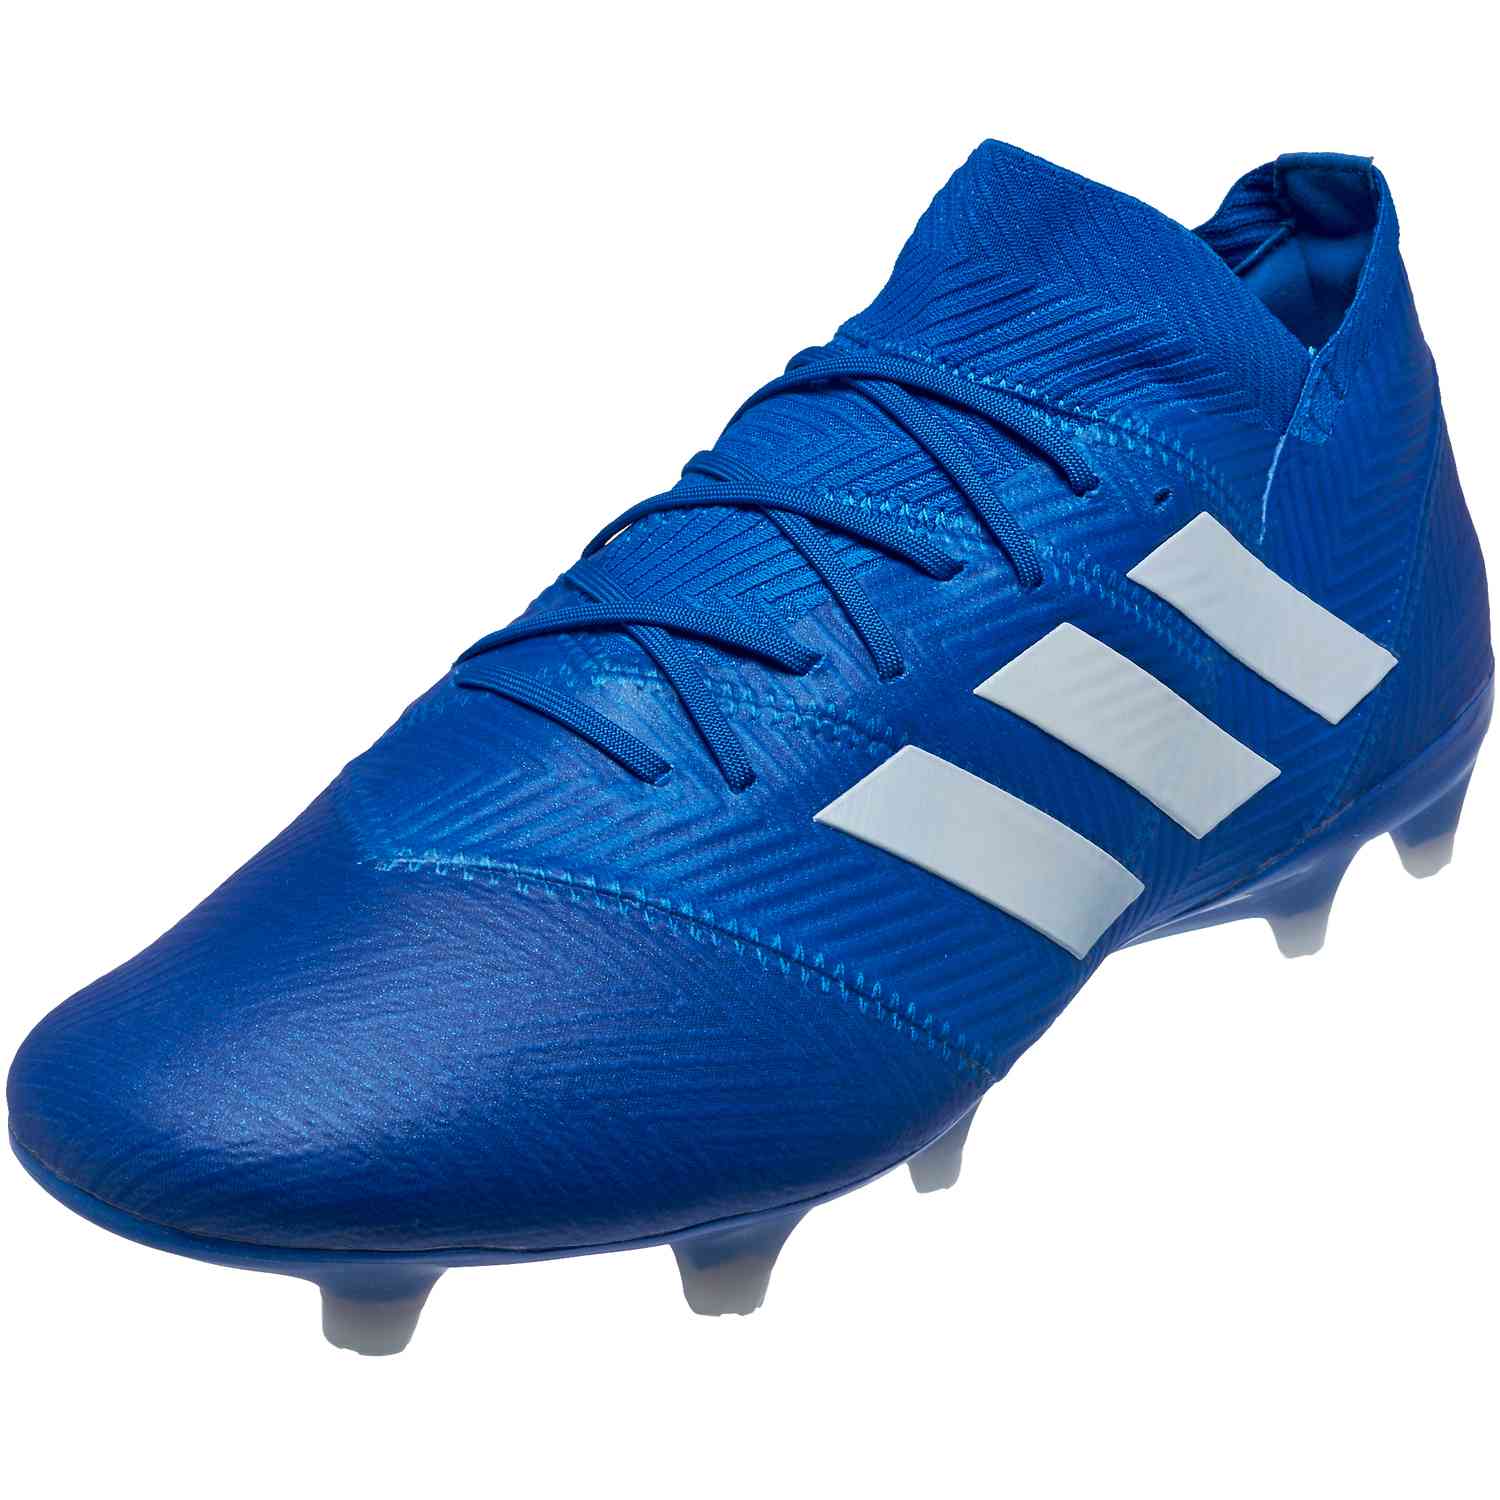 adidas Nemeziz 18.1 FG - Football Blue 